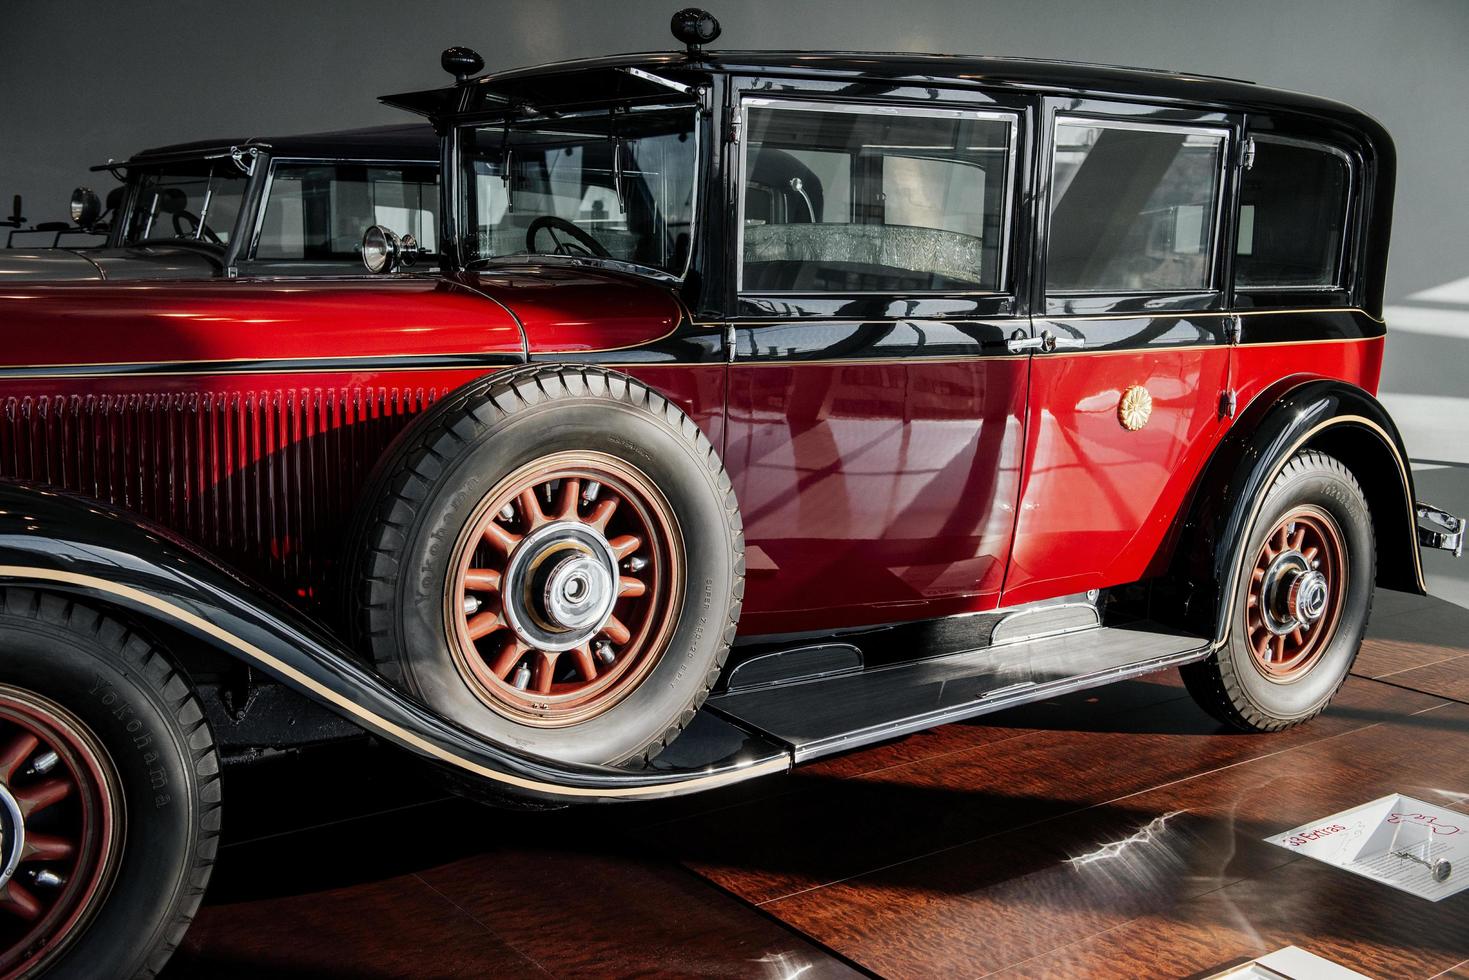 estugarda, alemanha - 16 de outubro de 2018 museu mercedes. dois automóveis. veículo antigo vermelho clássico. vista lateral. roda sobressalente na lateral foto